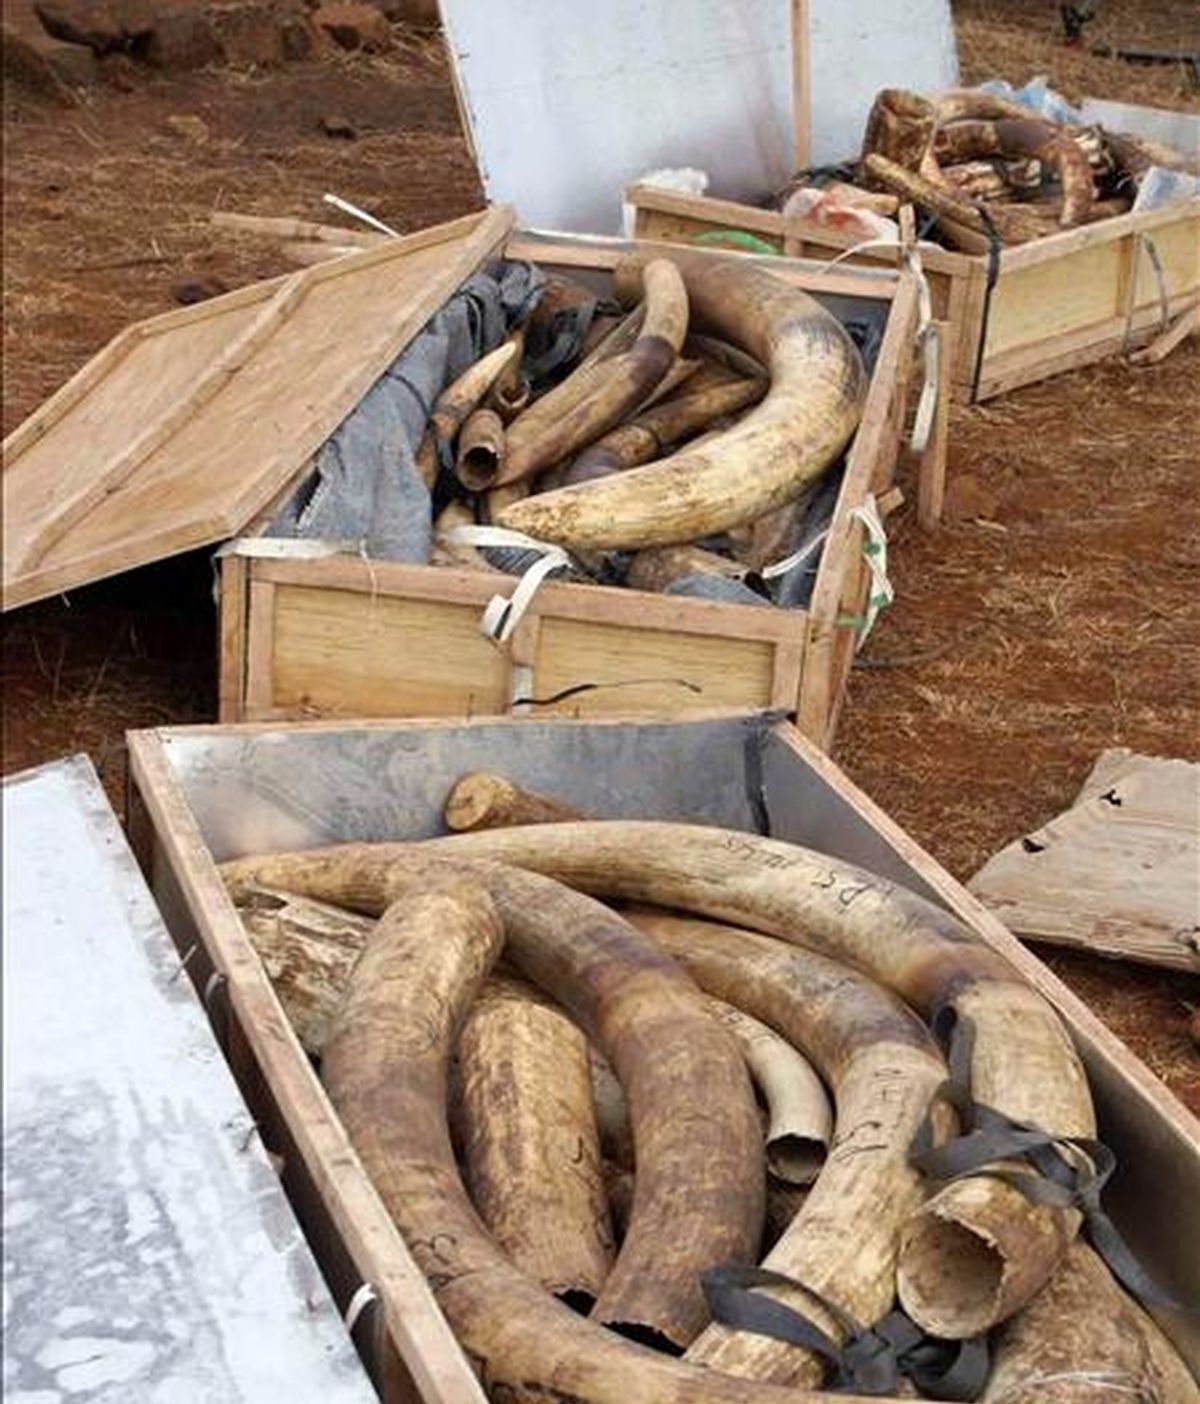 Fotografía facilitada por el Departamento de Conservación de la Naturaleza de Kenia que muestra tres de las cuatro cajas llenas de colmillos de elefante descubiertas en el Aeropuerto Internacional de Nairobi (Kenia), el 29 de septiembre de 2009. EFE/Archivo